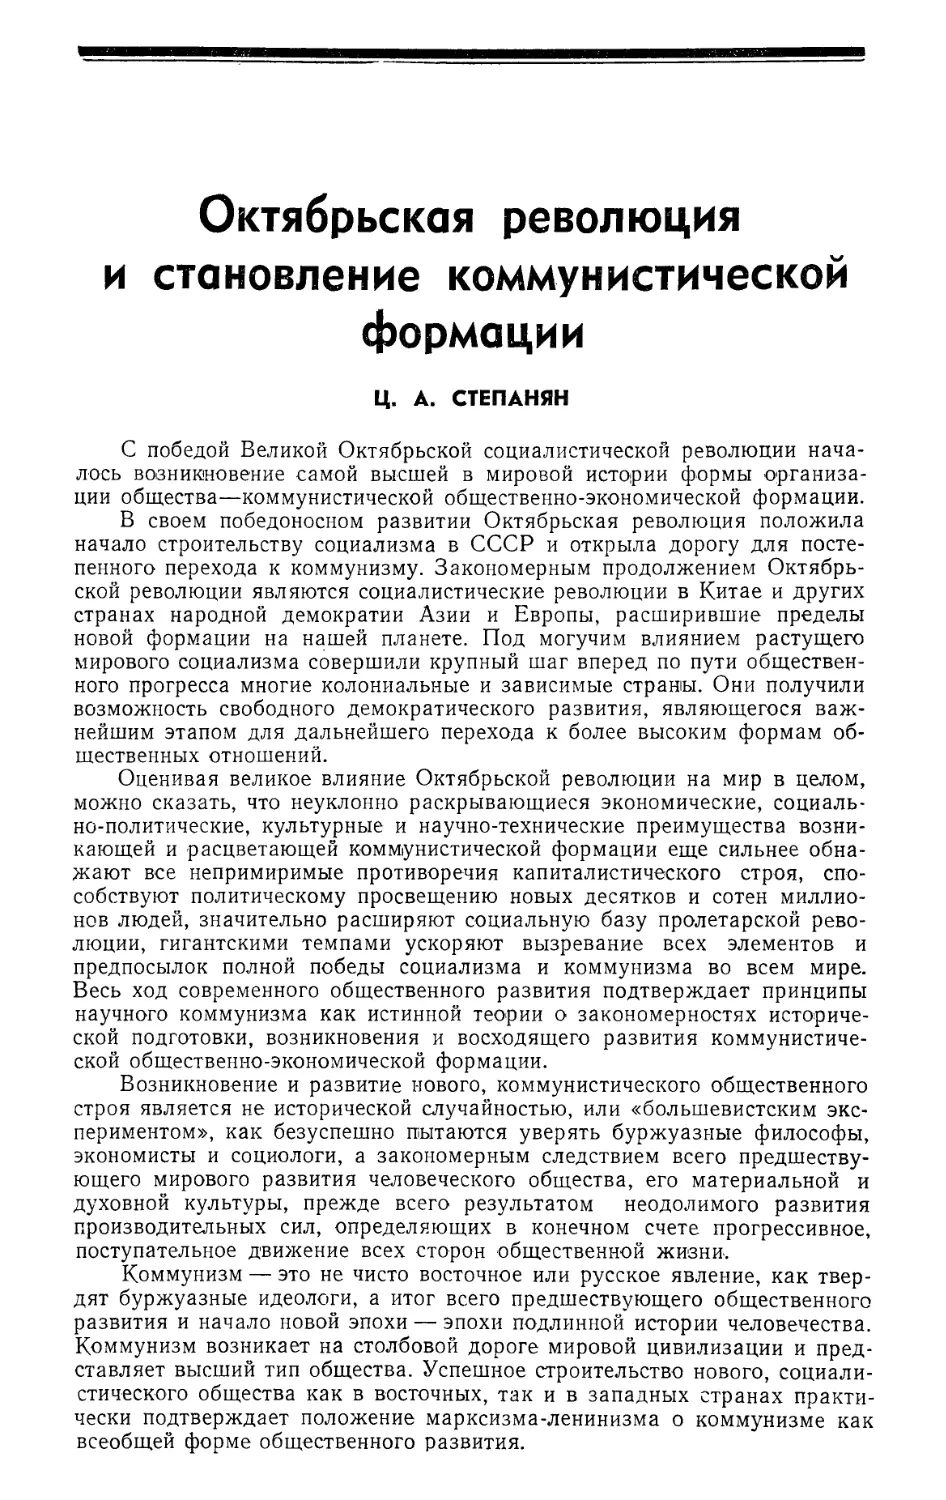 Ц. А. Степанян — Октябрьская революция и становление коммунистической формации